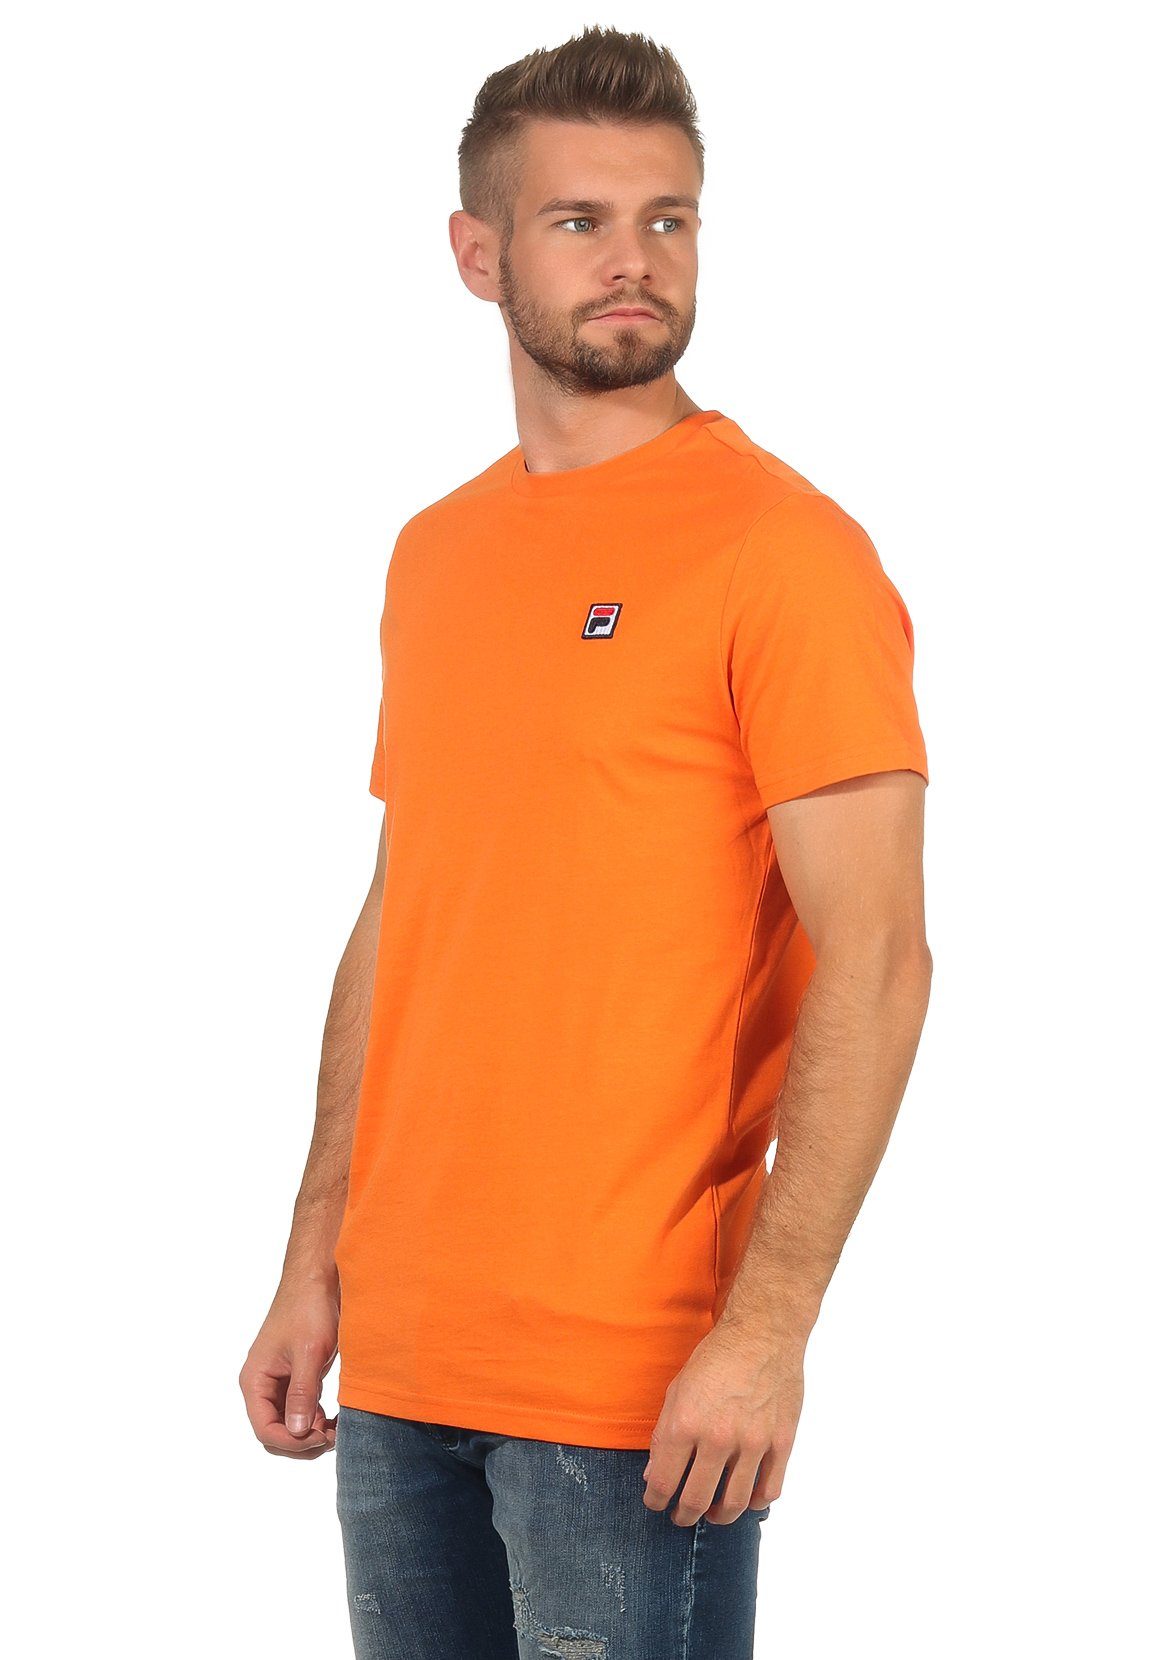 MEN SEAMUS Fila SS T-Shirt T-Shirt Herren Fila TEE 682393 Mandarin S62 Orange Orange